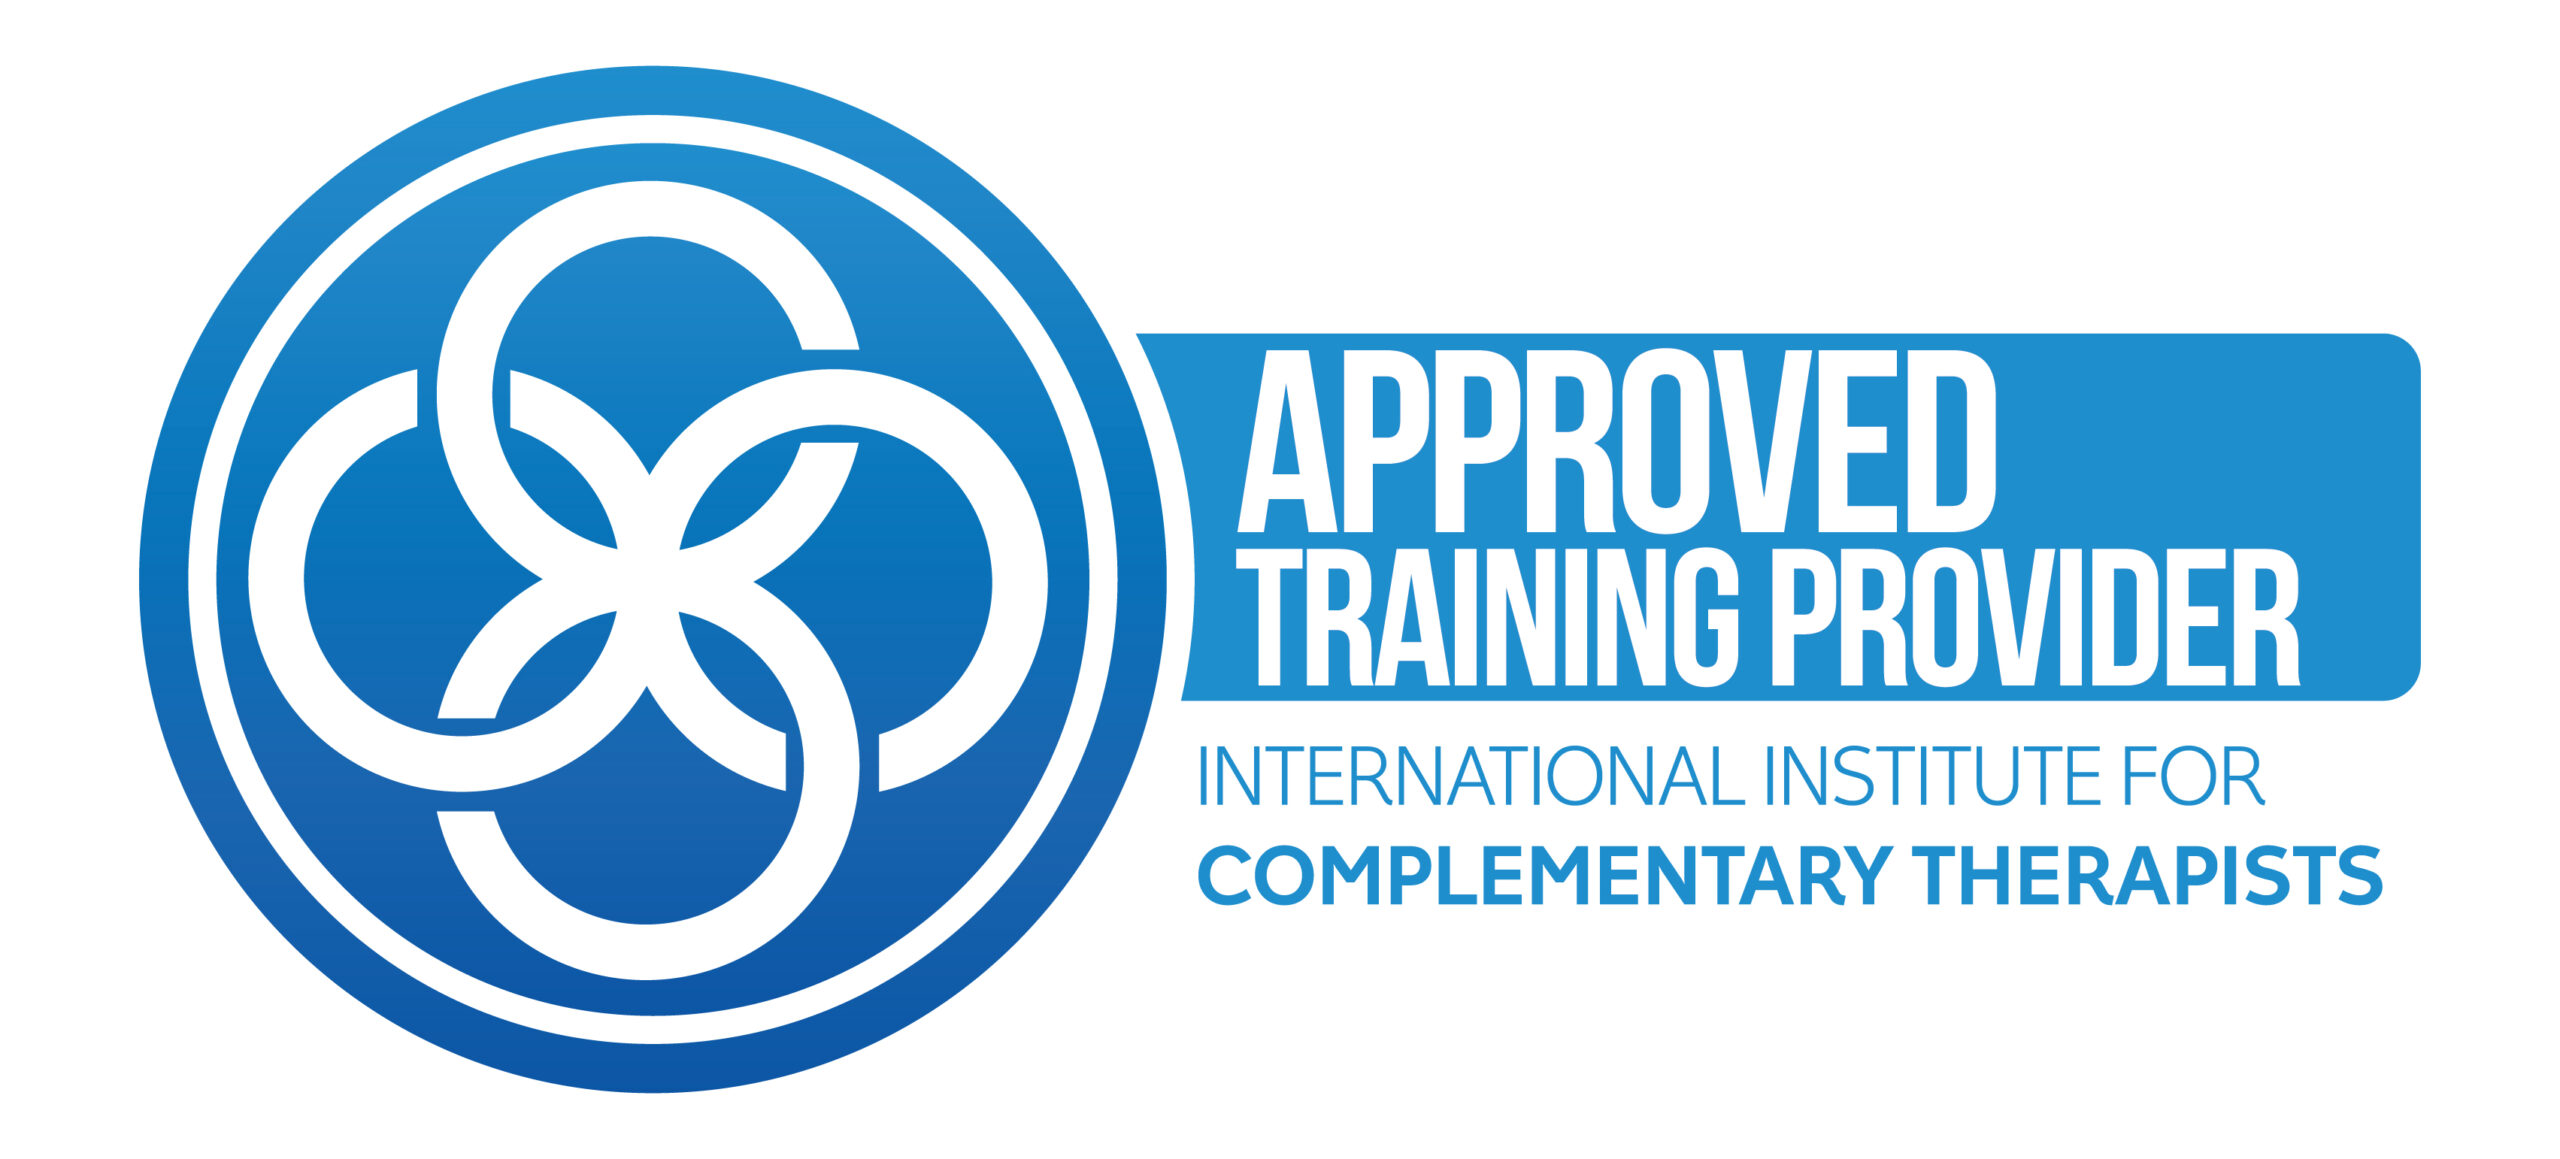 Wir sind ein anerkannter Schulungsanbieter des International Institute For Complementary Therapists